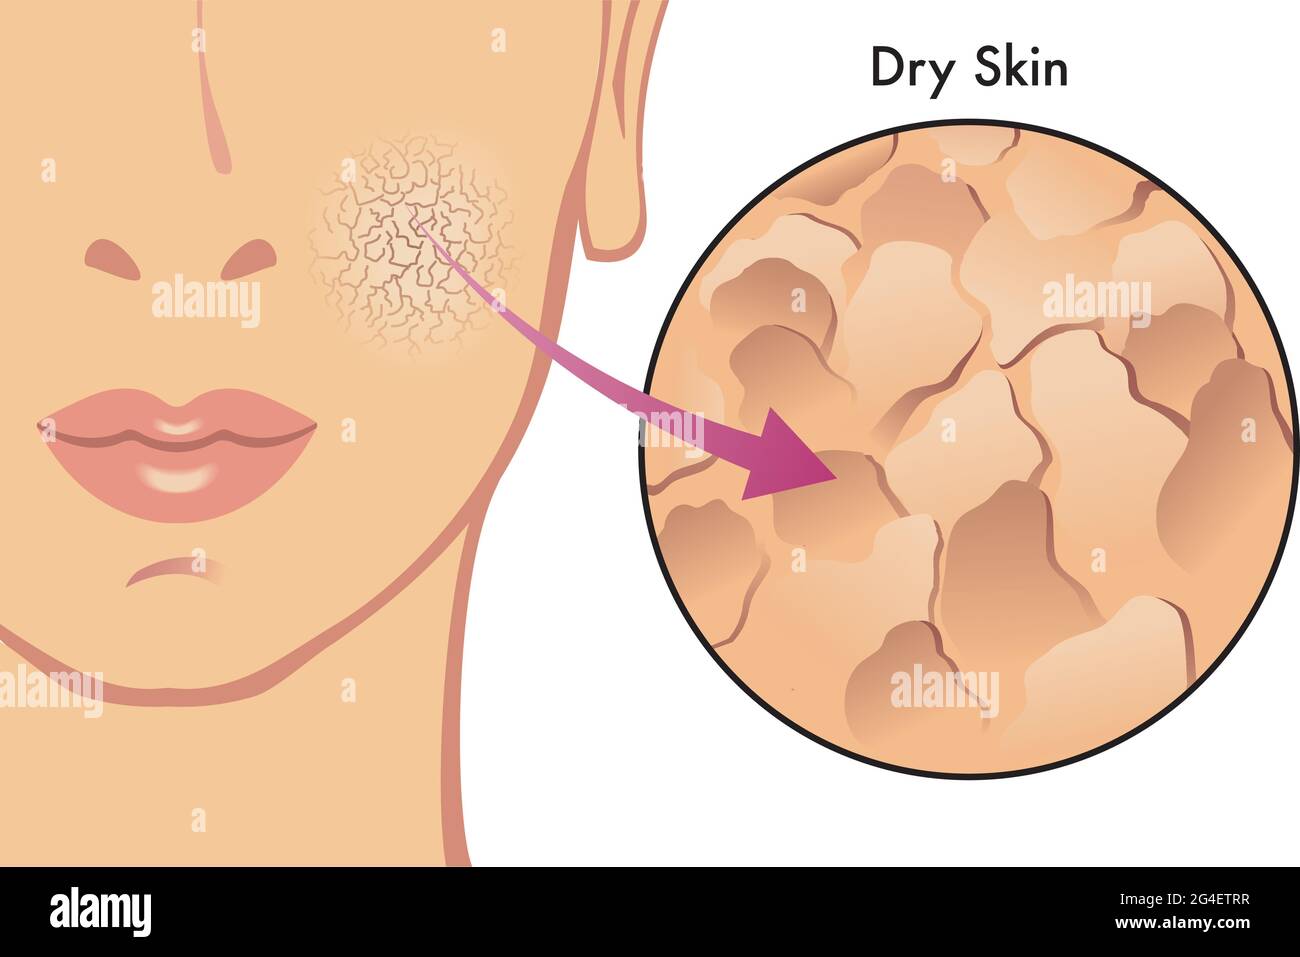 Illustrazione medica dei sintomi della pelle secca. Illustrazione Vettoriale